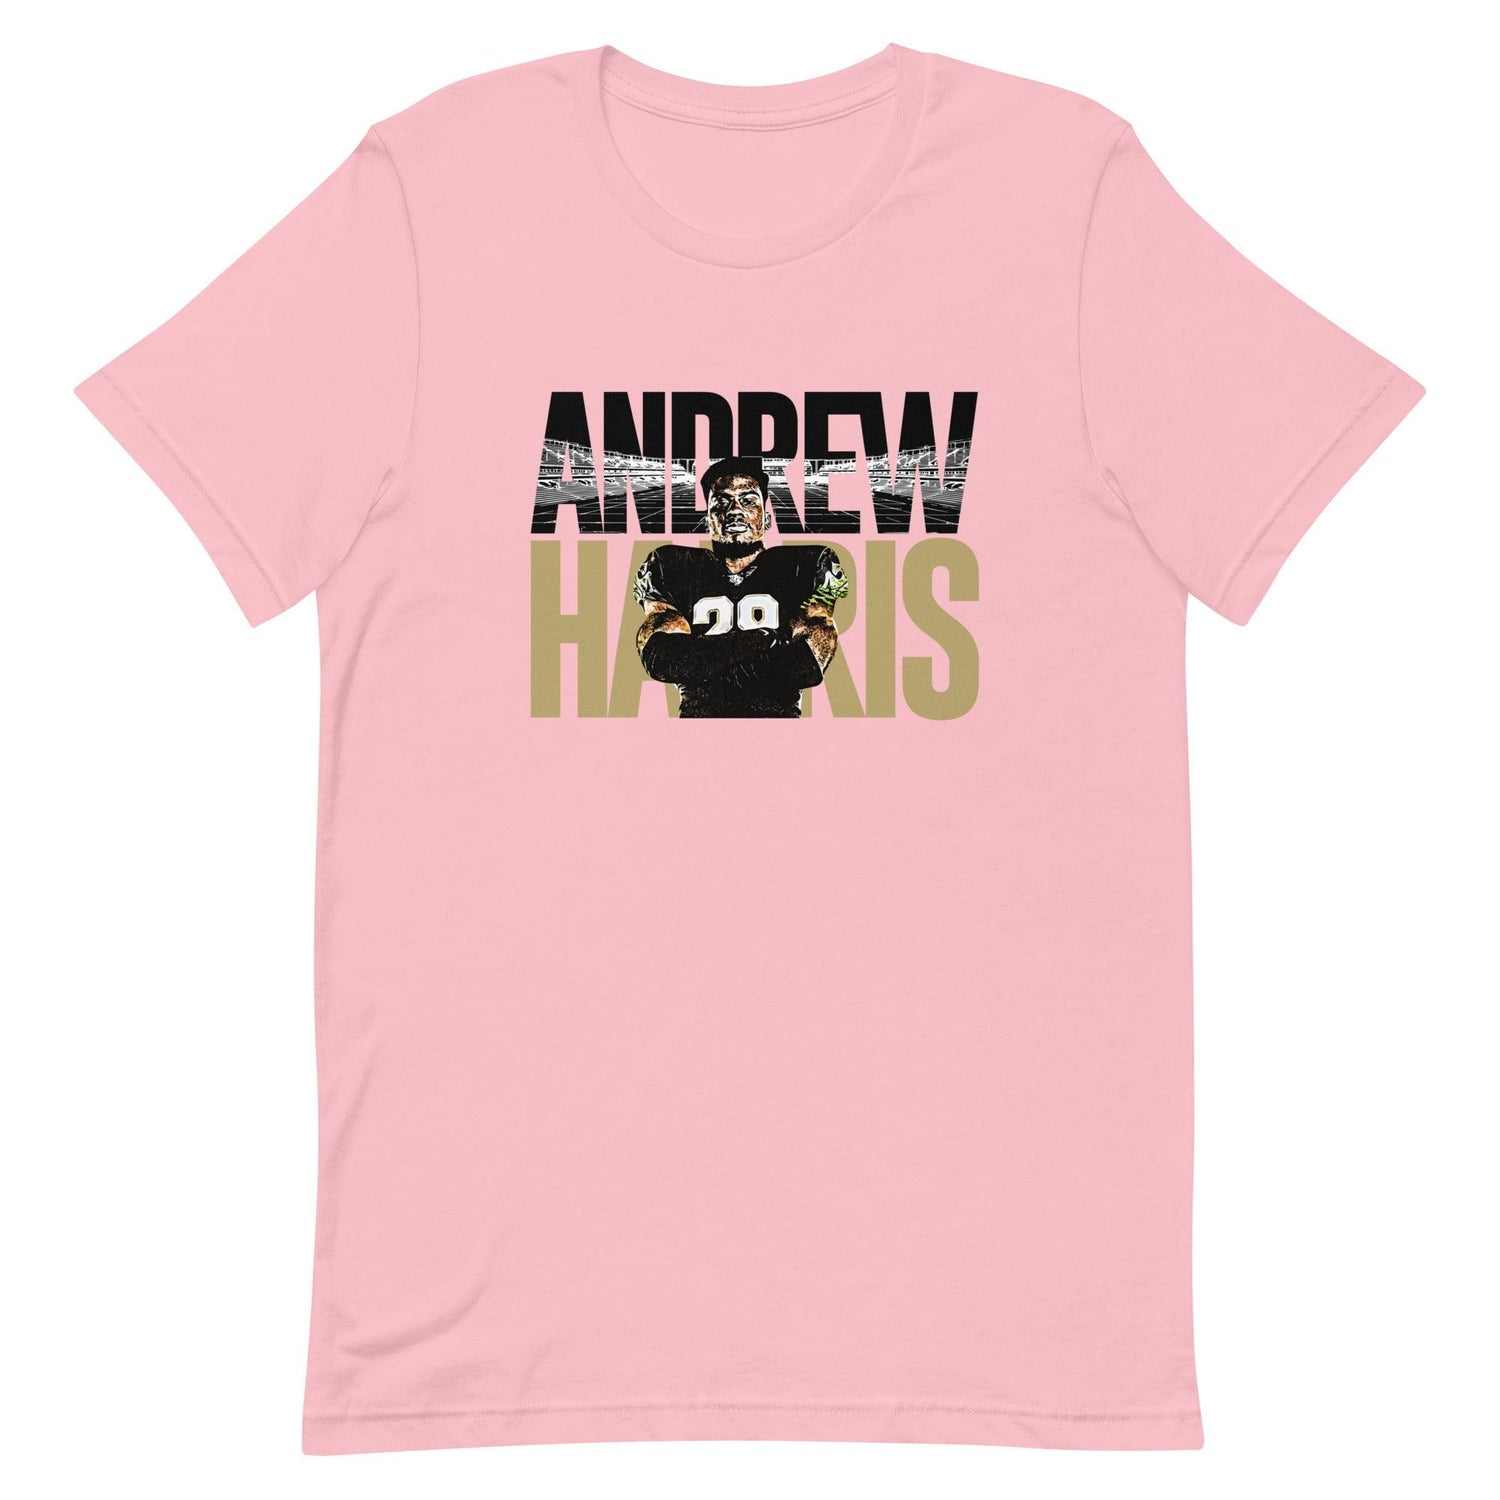 Andrew Harris "Jersey" t-shirt - Fan Arch